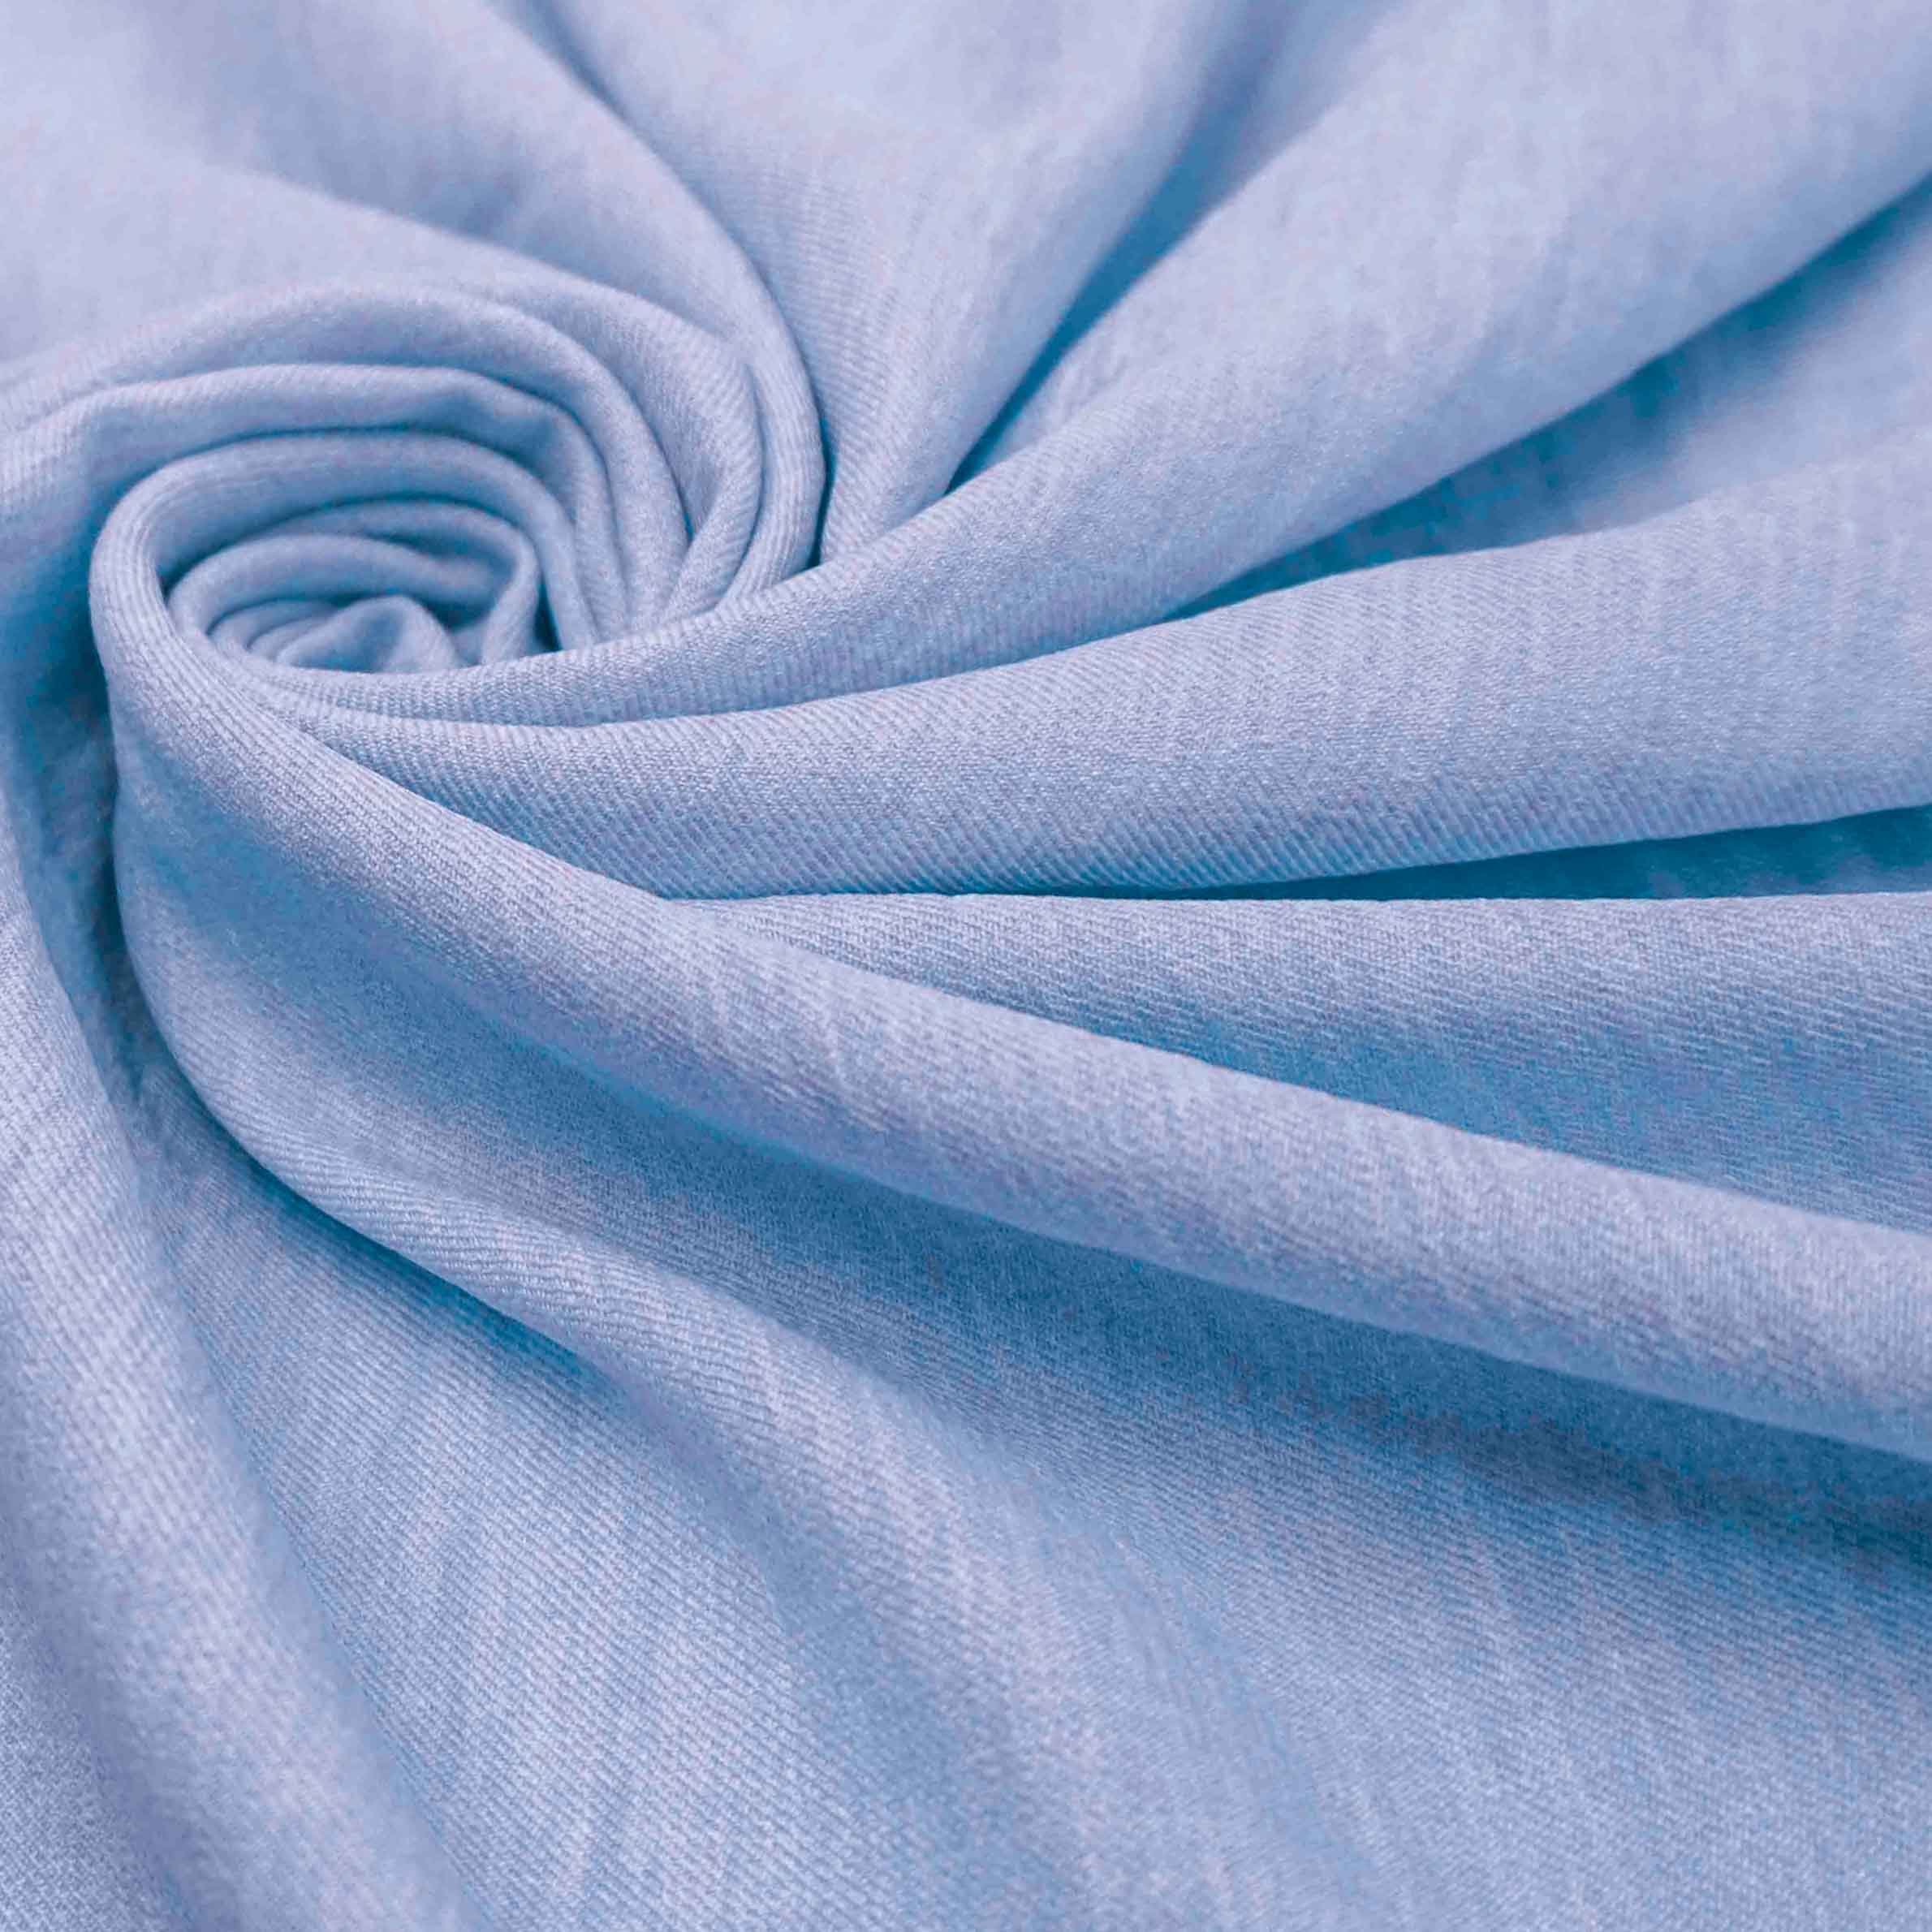 Tecido alfaiataria com textura de linho azul serenity